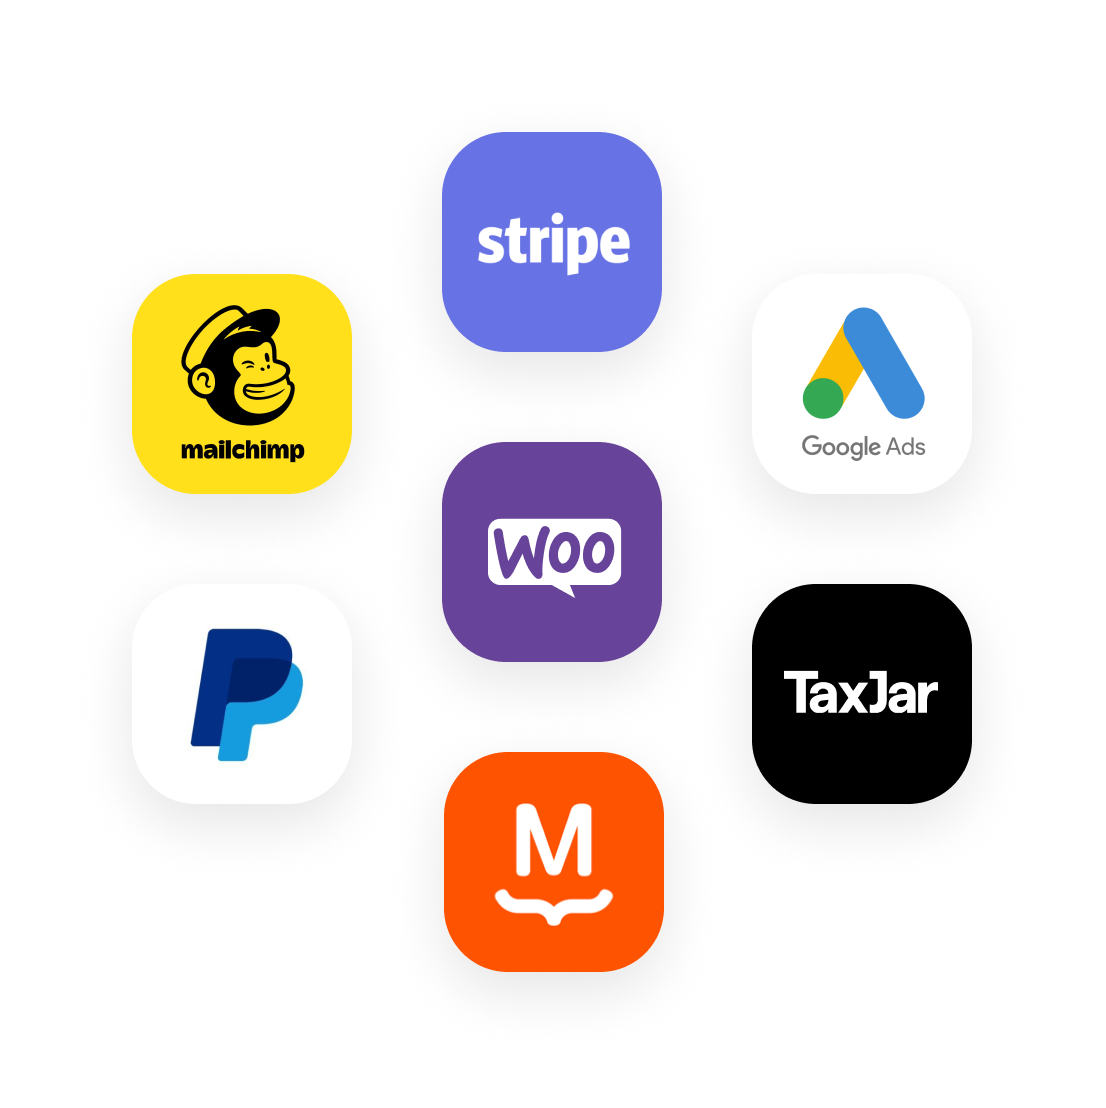 شعارات لمجموعة مختارة من المنتجات المتوافقة مع WooCommerce: Stripe و Google Ads و TaxJar و MailChimp و PayPal و MailPoet.